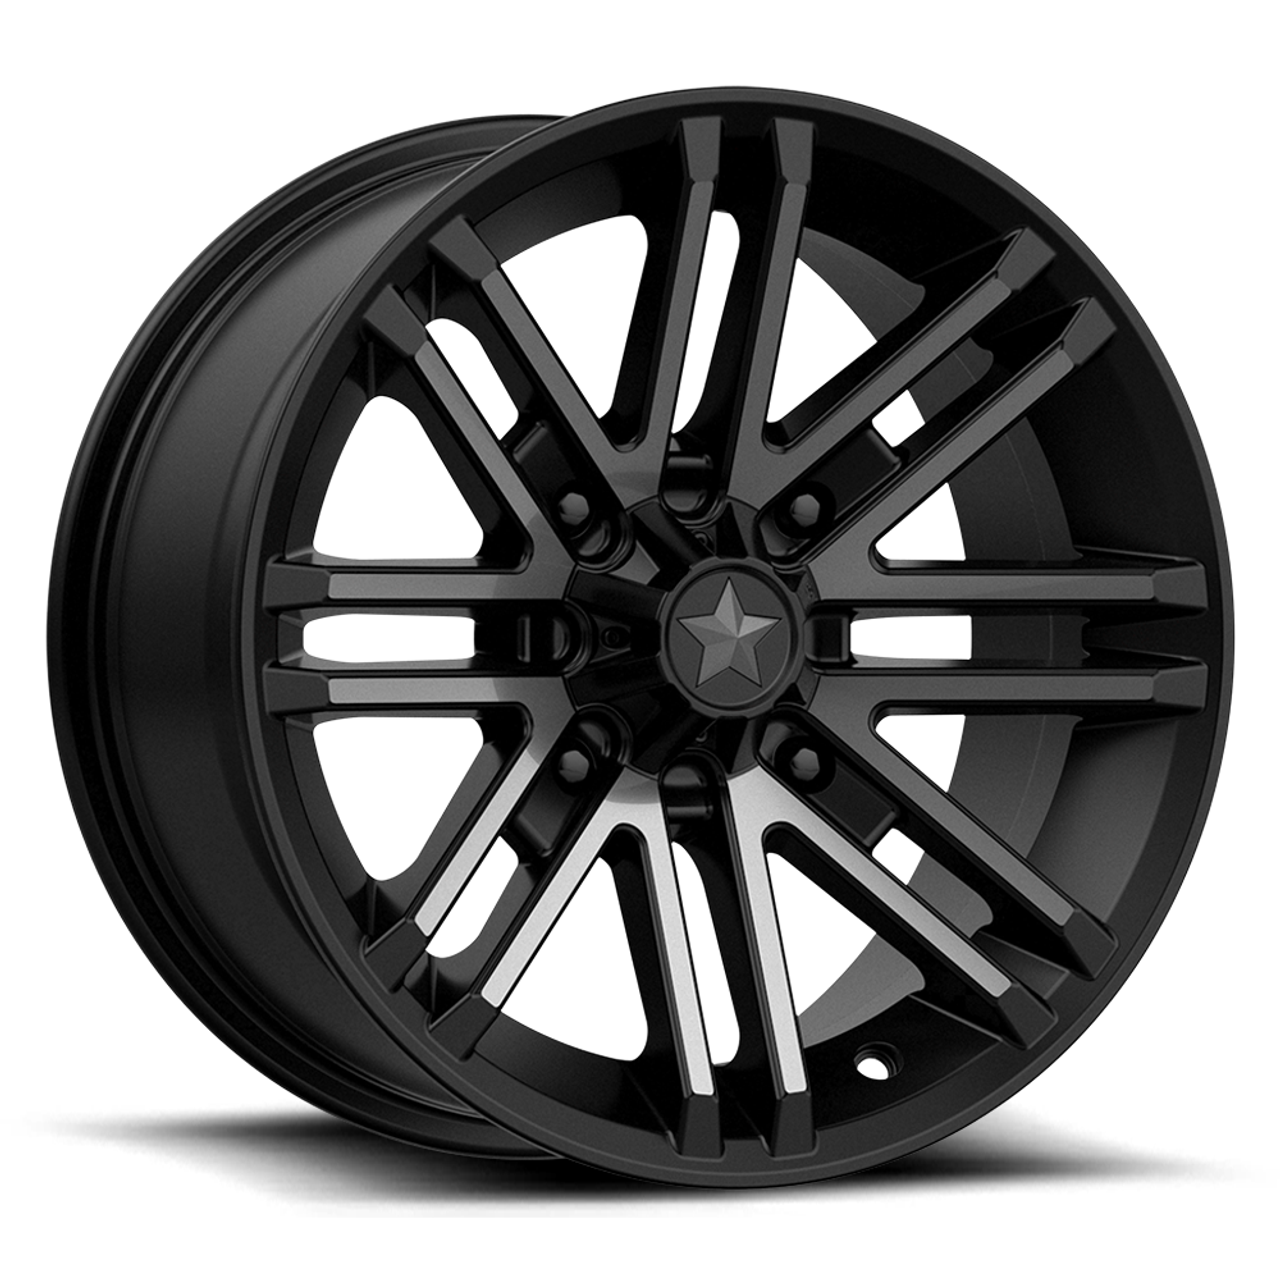 MSA Offroad Wheels M40 Rogue 16x7 4x156 Satin Black Titanium Tint Wheel 16" 10mm